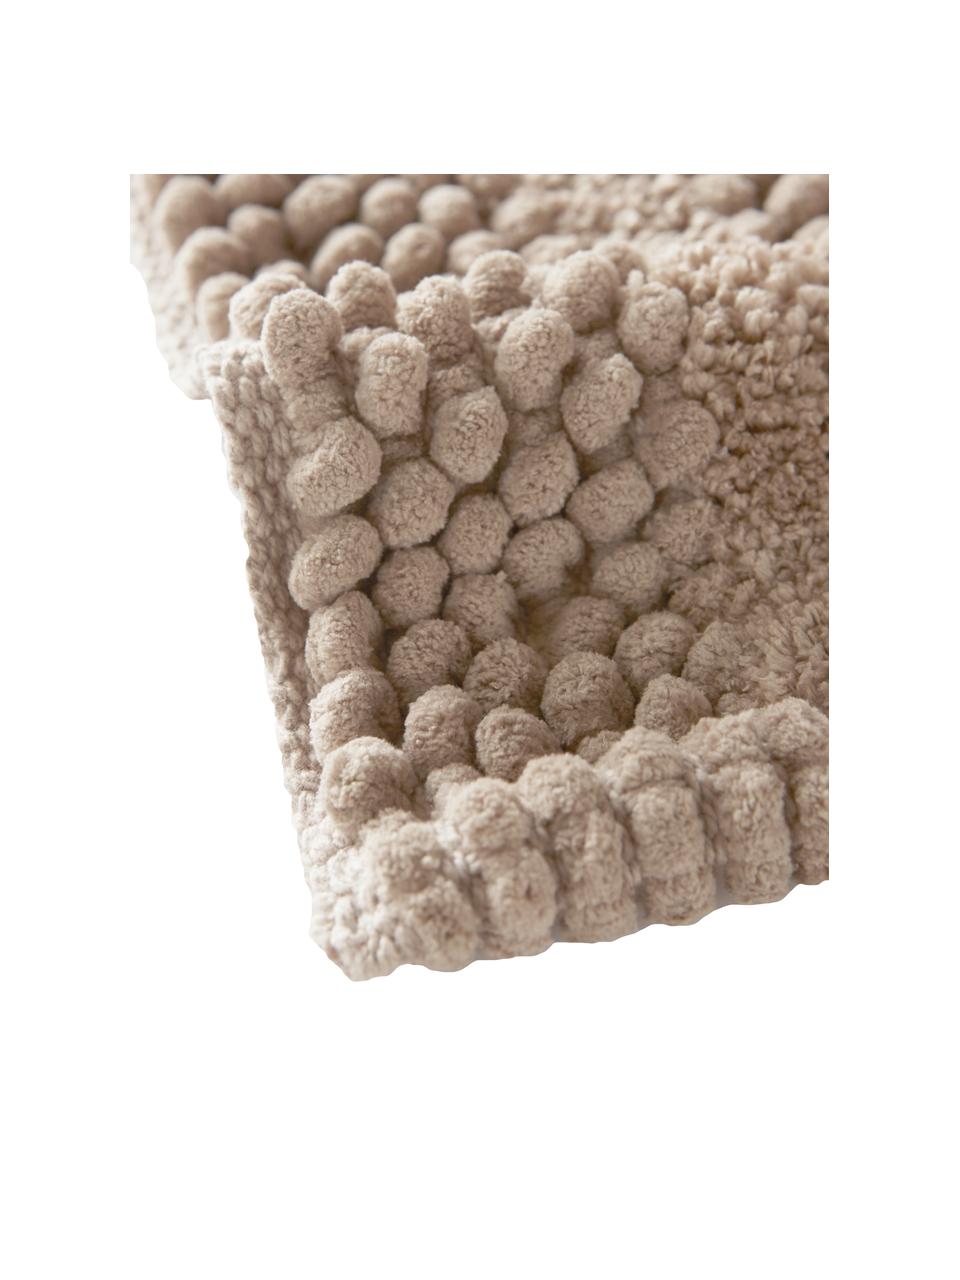 Tappeto bagno morbido con motivo a rilievo Nea, 65% poliestere, 35% cotone, Color sabbia, Larg. 50 x Lung. 80 cm